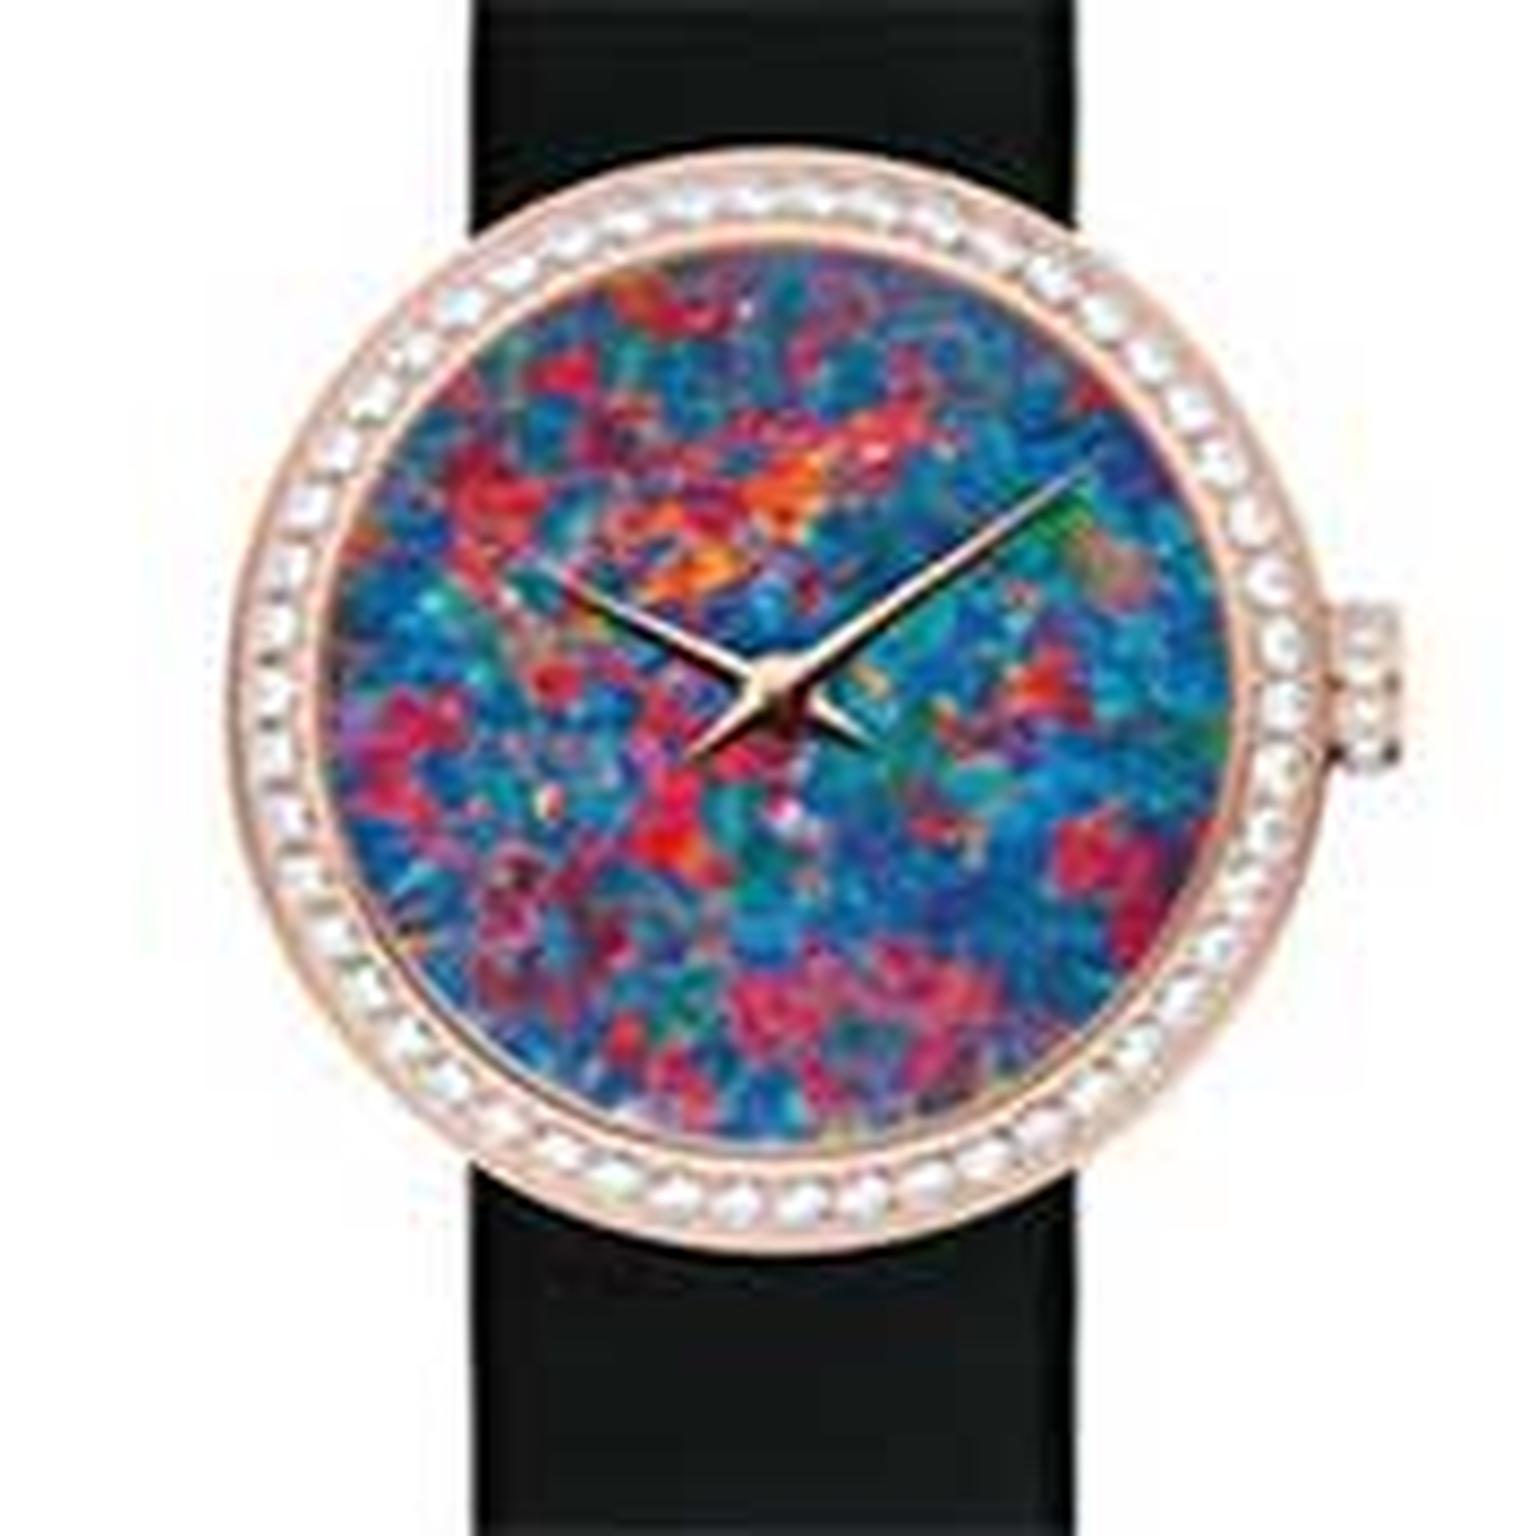 D de Dior opal watch